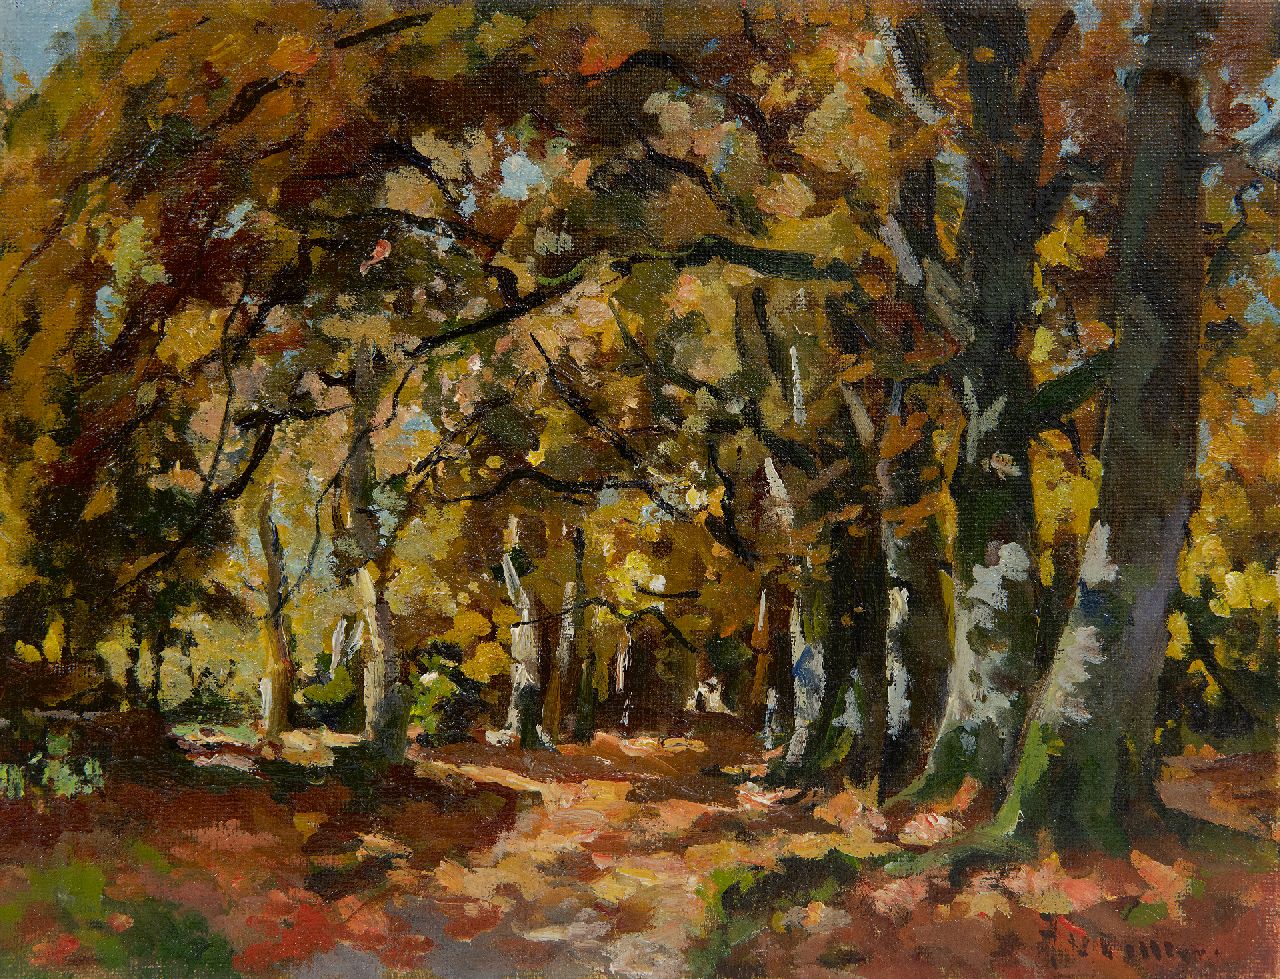 Vuuren J. van | Jan van Vuuren, Autumn forest, oil on canvas 19.2 x 25.2 cm, signed l.r.